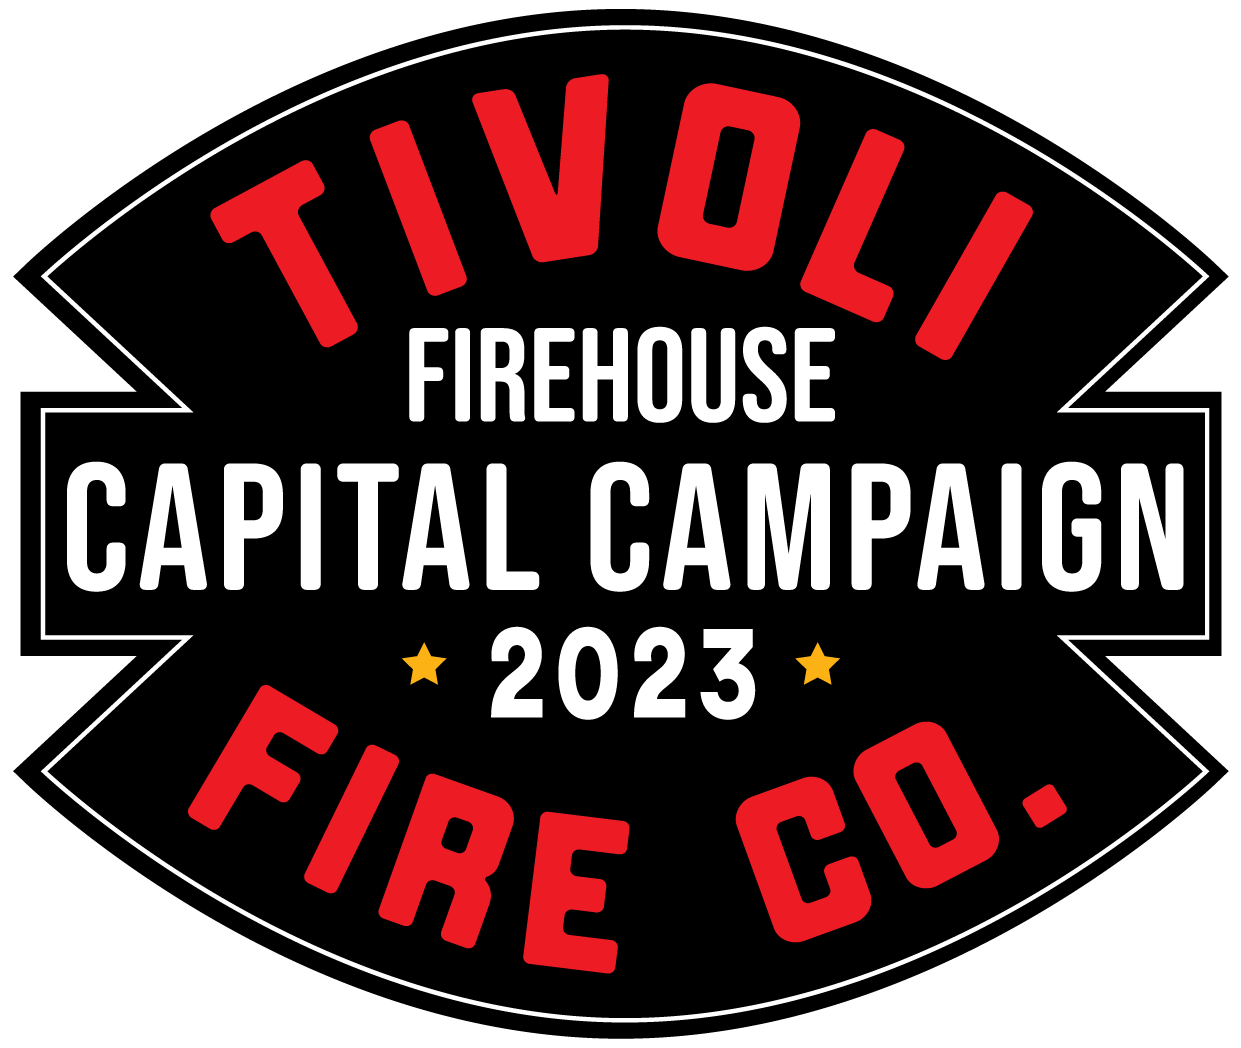 Tivoli Firehouse